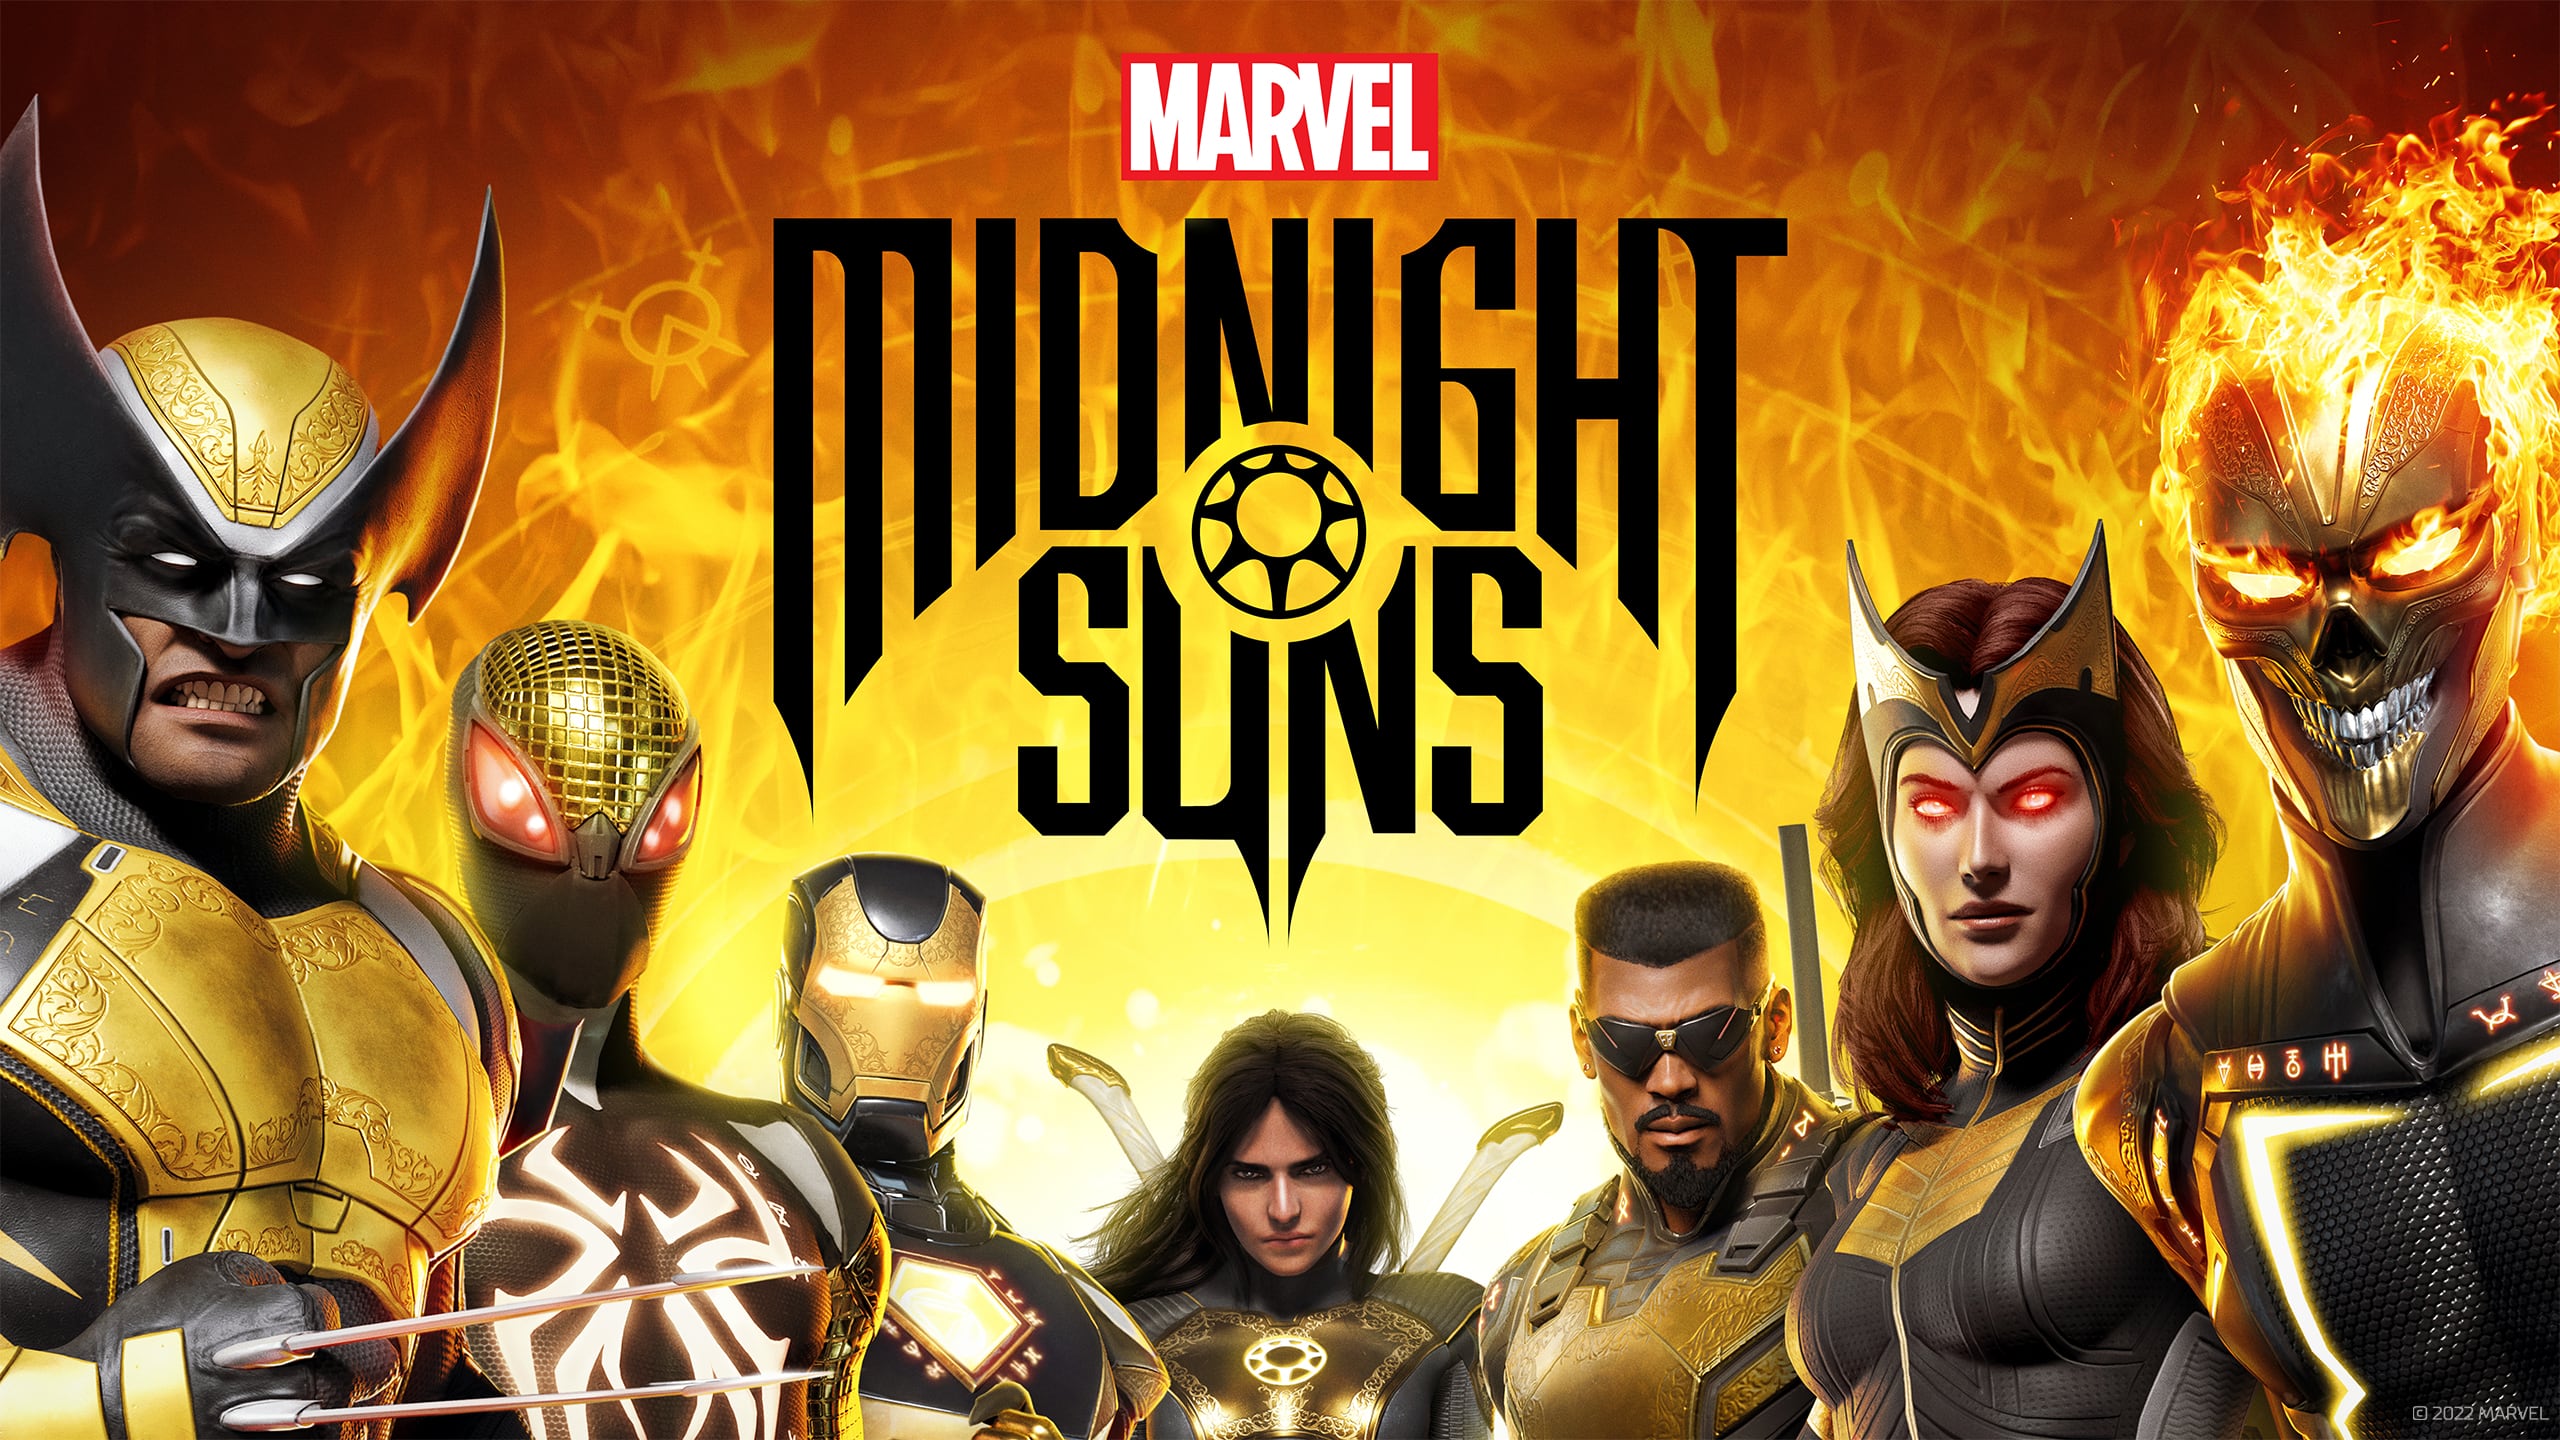 Marvel's Midnight Suns - grafika promująca grę (źródło: Epic Games Store)